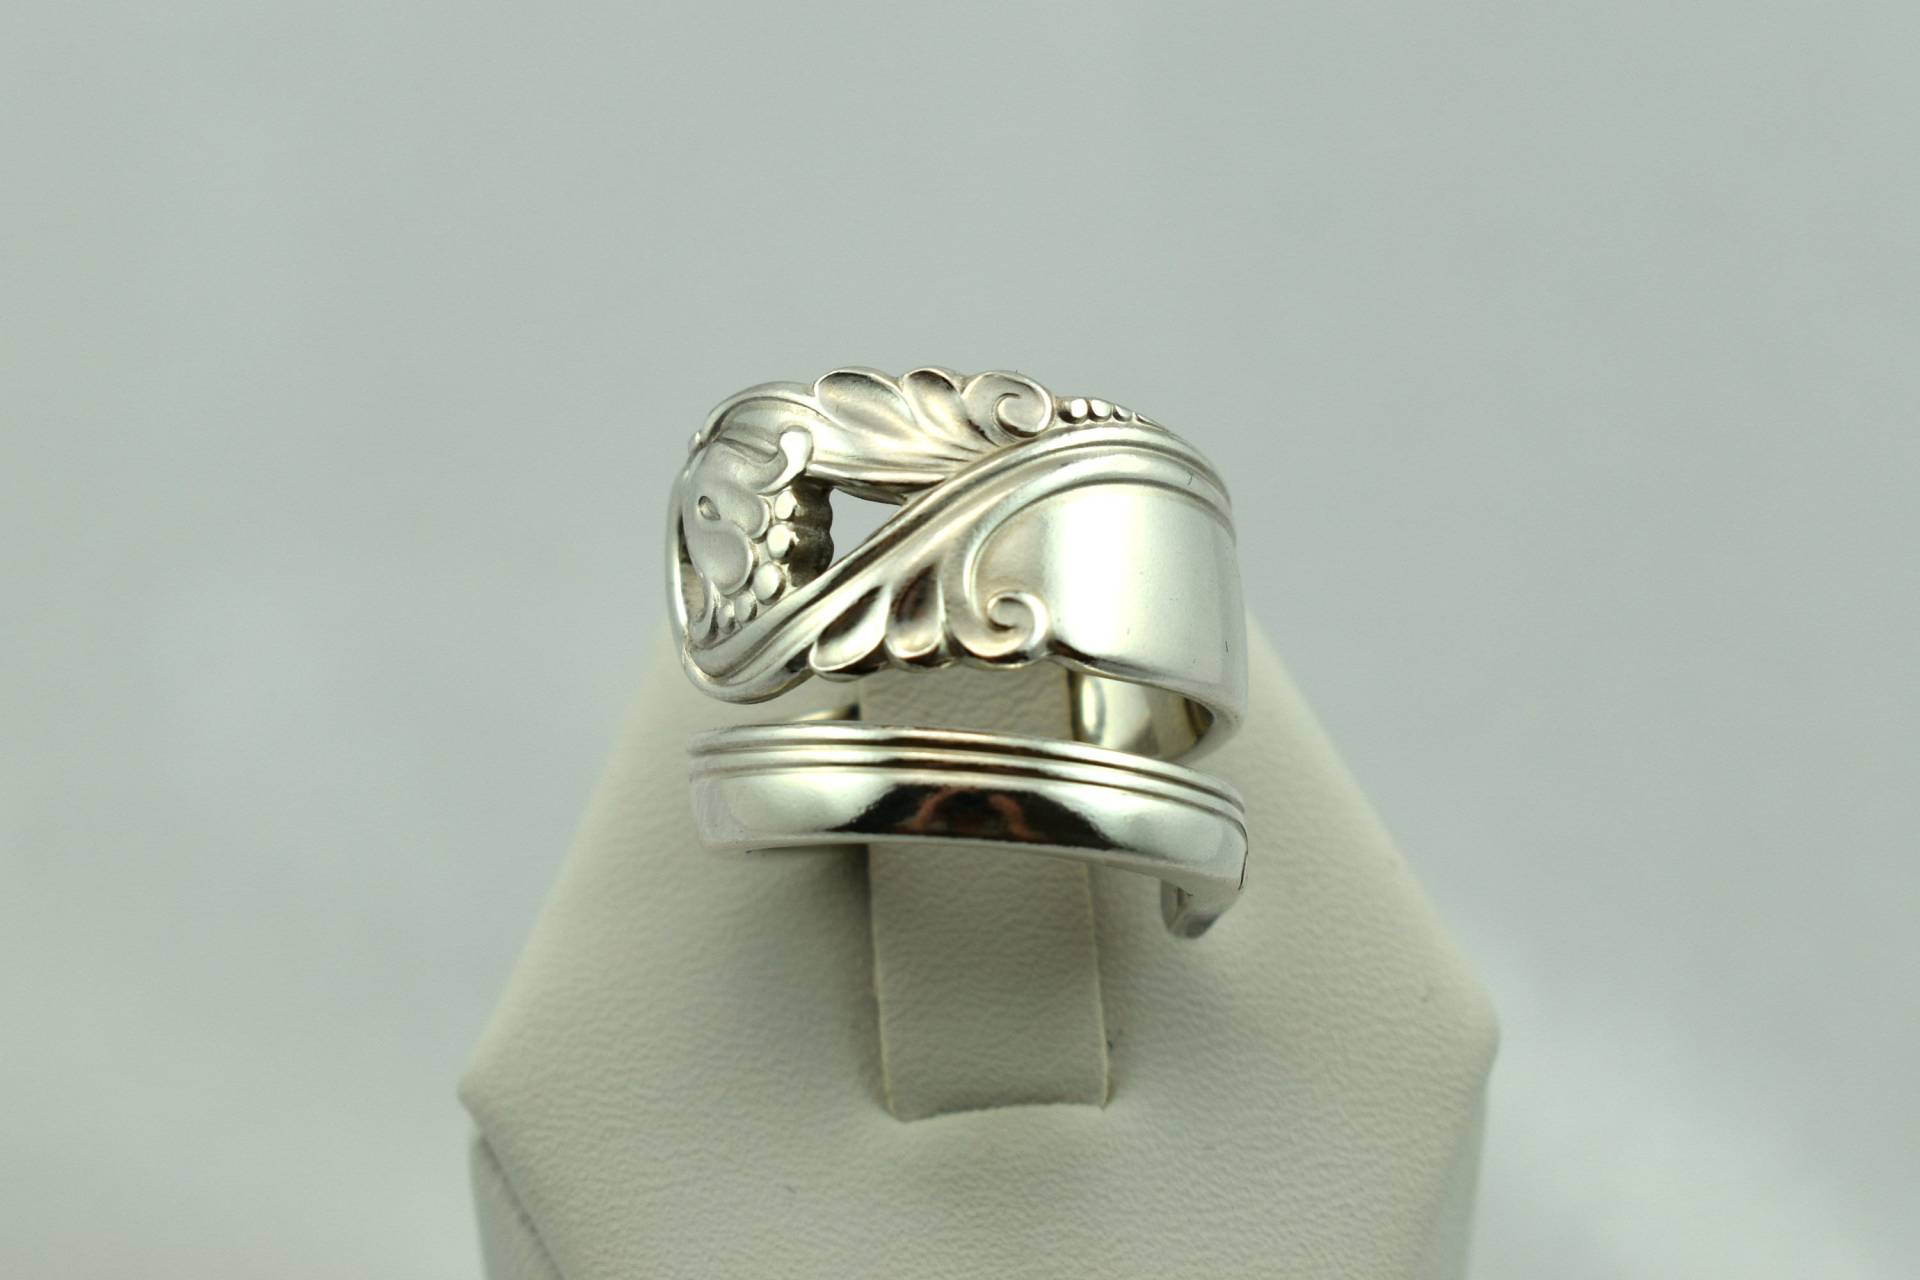 Sammlerstück "Spring Glory" Echt Vintage Sterling Silber Löffel Ring Verstellbar Größe 6 Versandkostenfrei #bbnet-Sr21 von rubysvintagejewelry